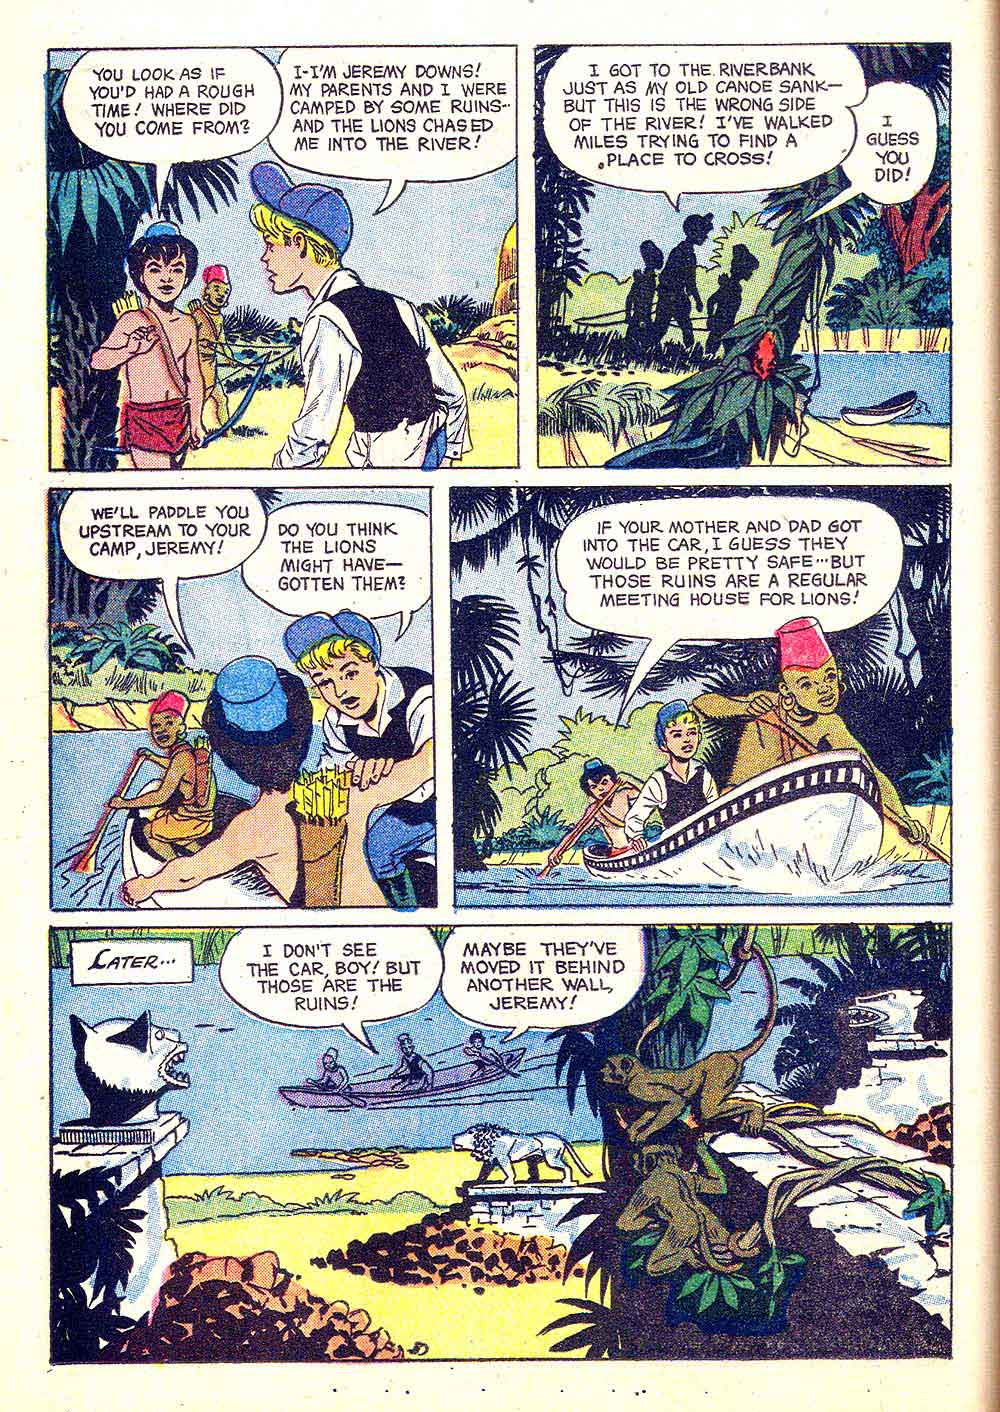 Tarzan's Jungle Annual v1 #7 - Russ Manning dell silver age comic book page art